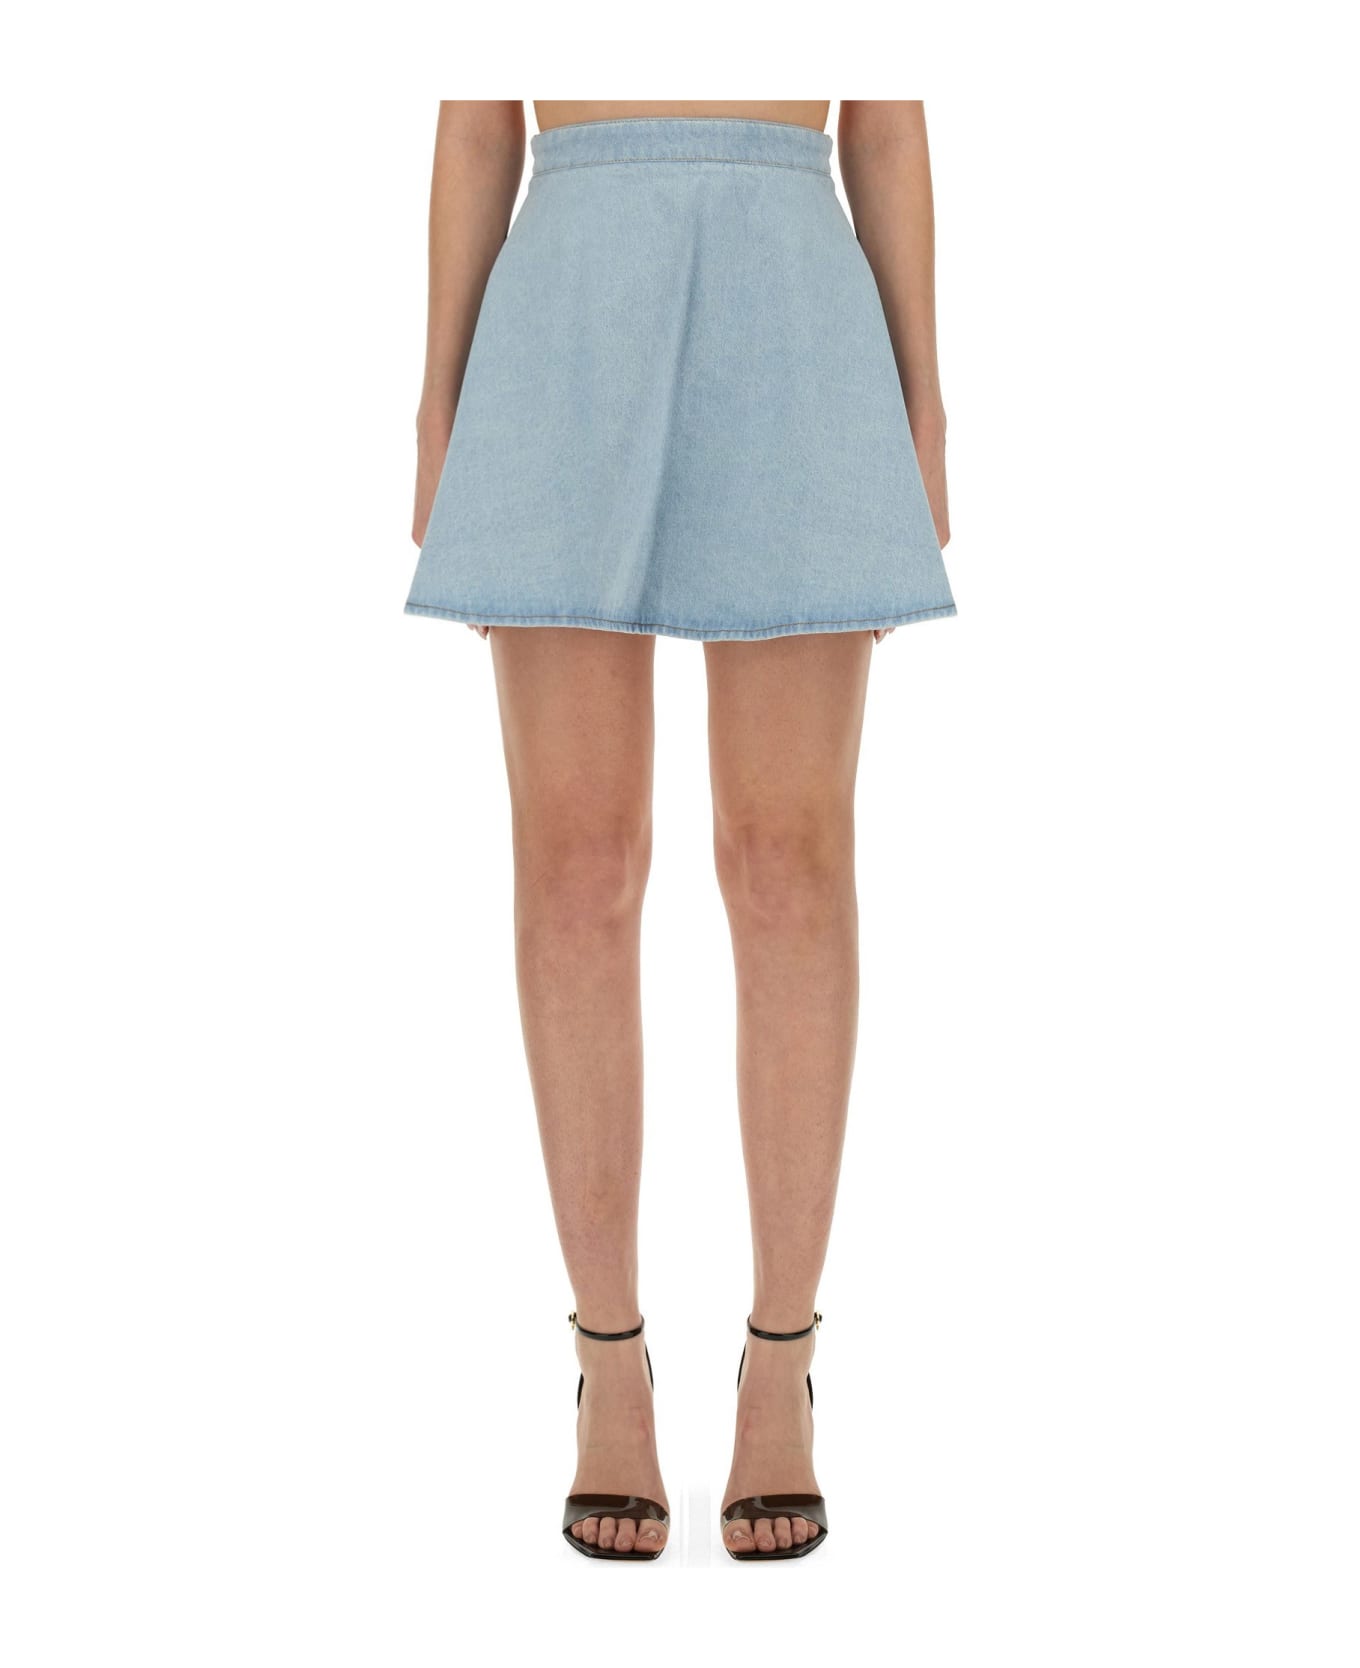 Nina Ricci Mini Skirt - Light Blue